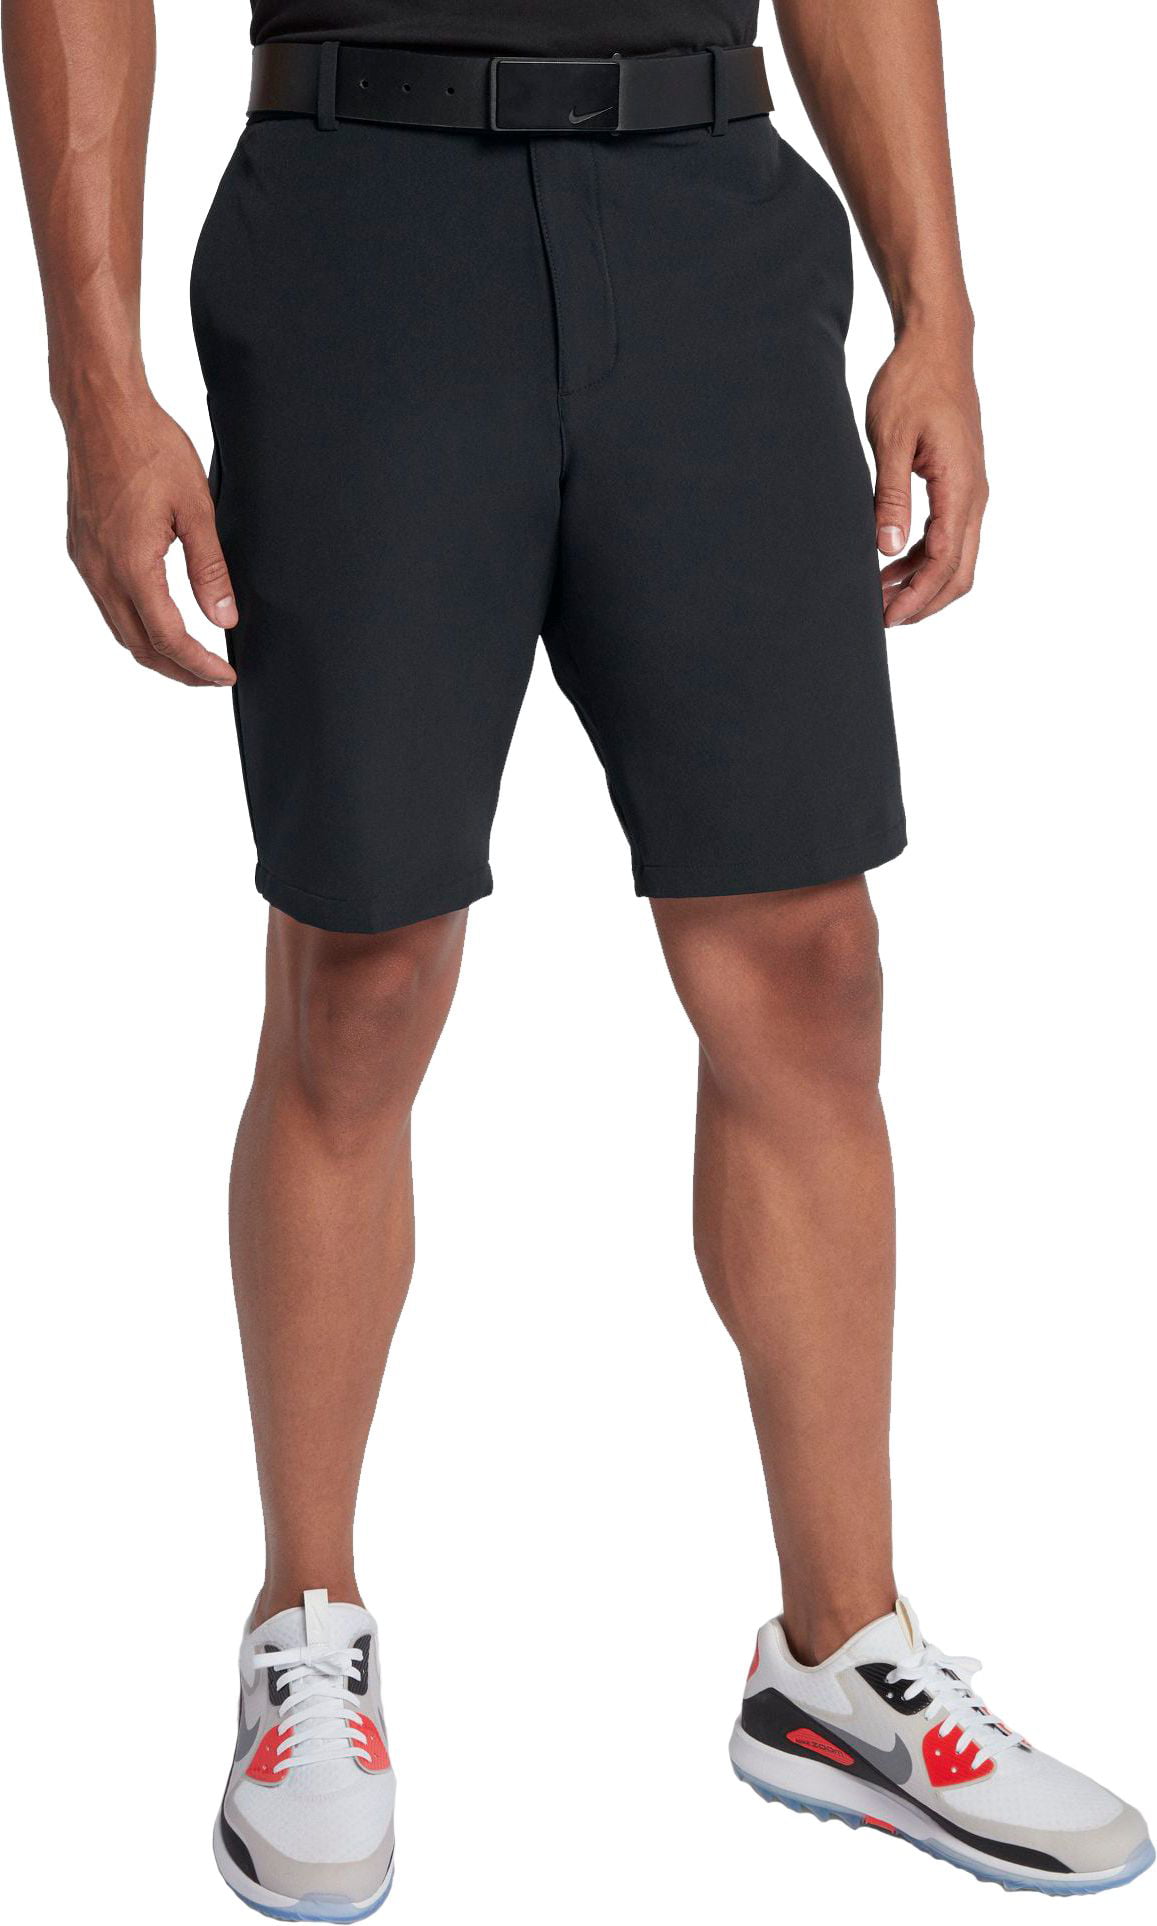 Nike Men's Solid Slim Fit Flex Golf Shorts - Walmart.com - Walmart.com